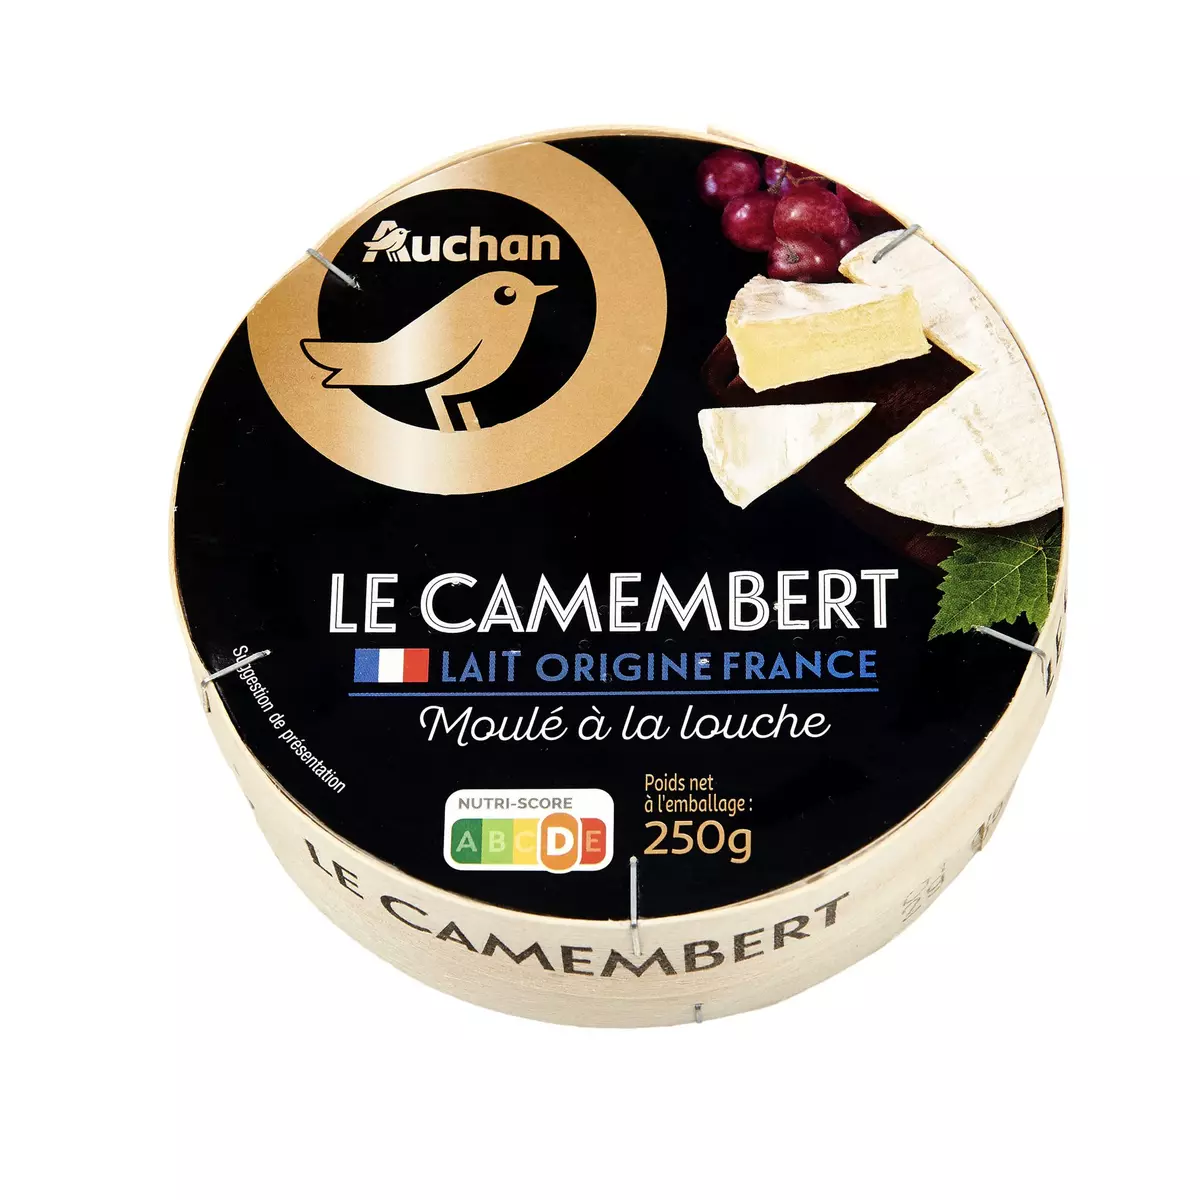 AUCHAN GOURMET Camembert moulé à la louche 250g